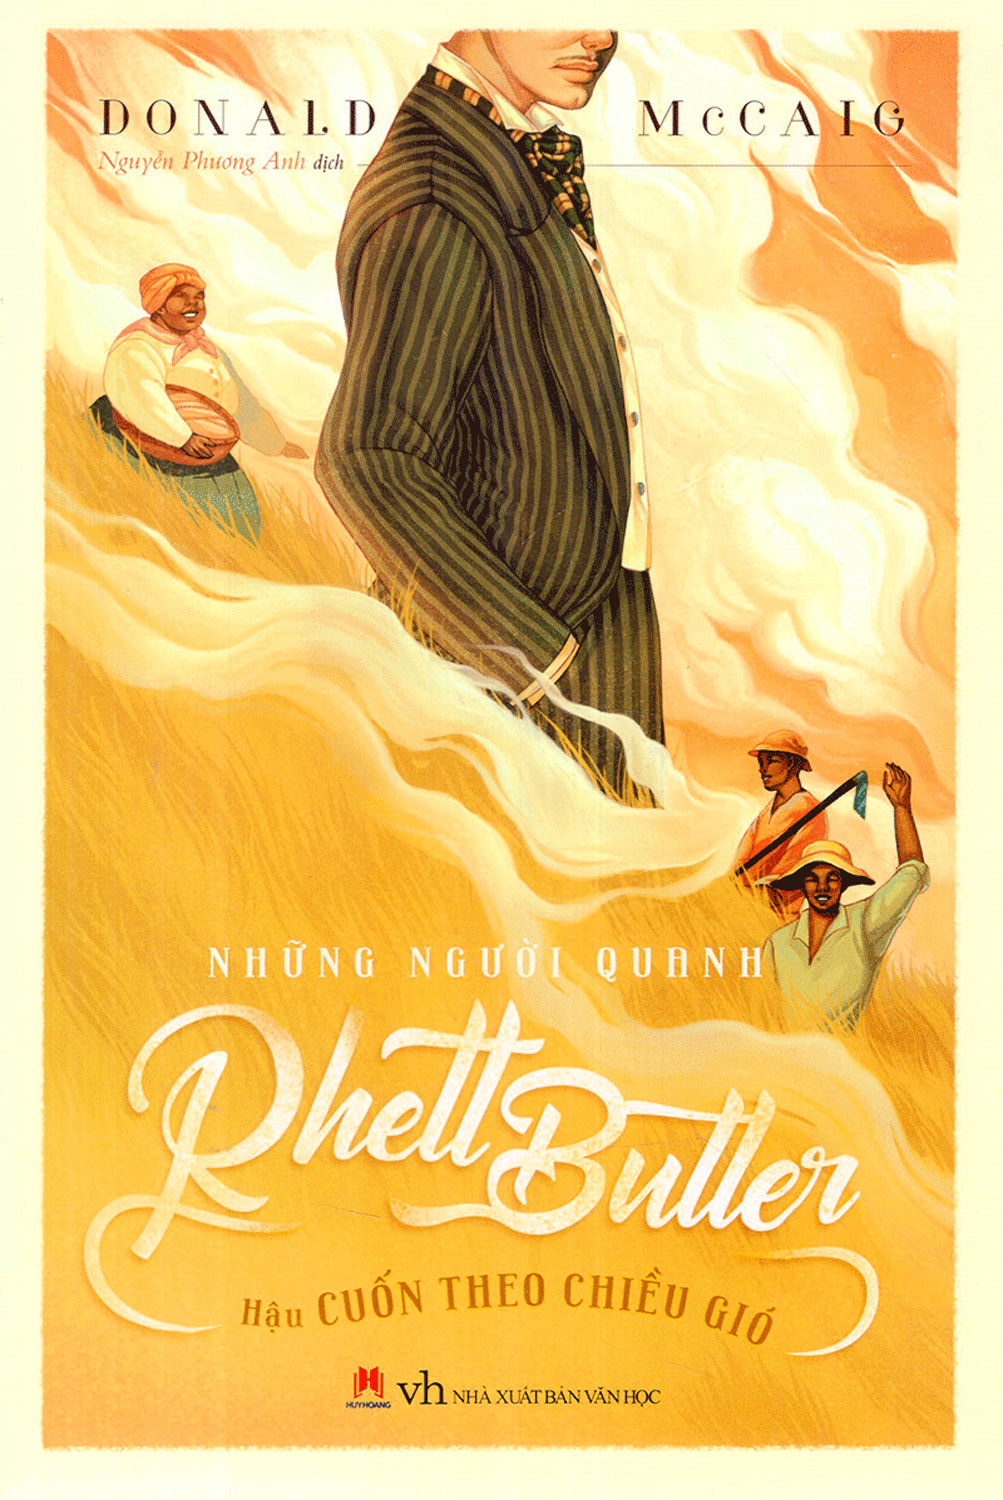 Những Người Quanh Rhett Butter - Hậu Cuốn Theo Chiều Gió